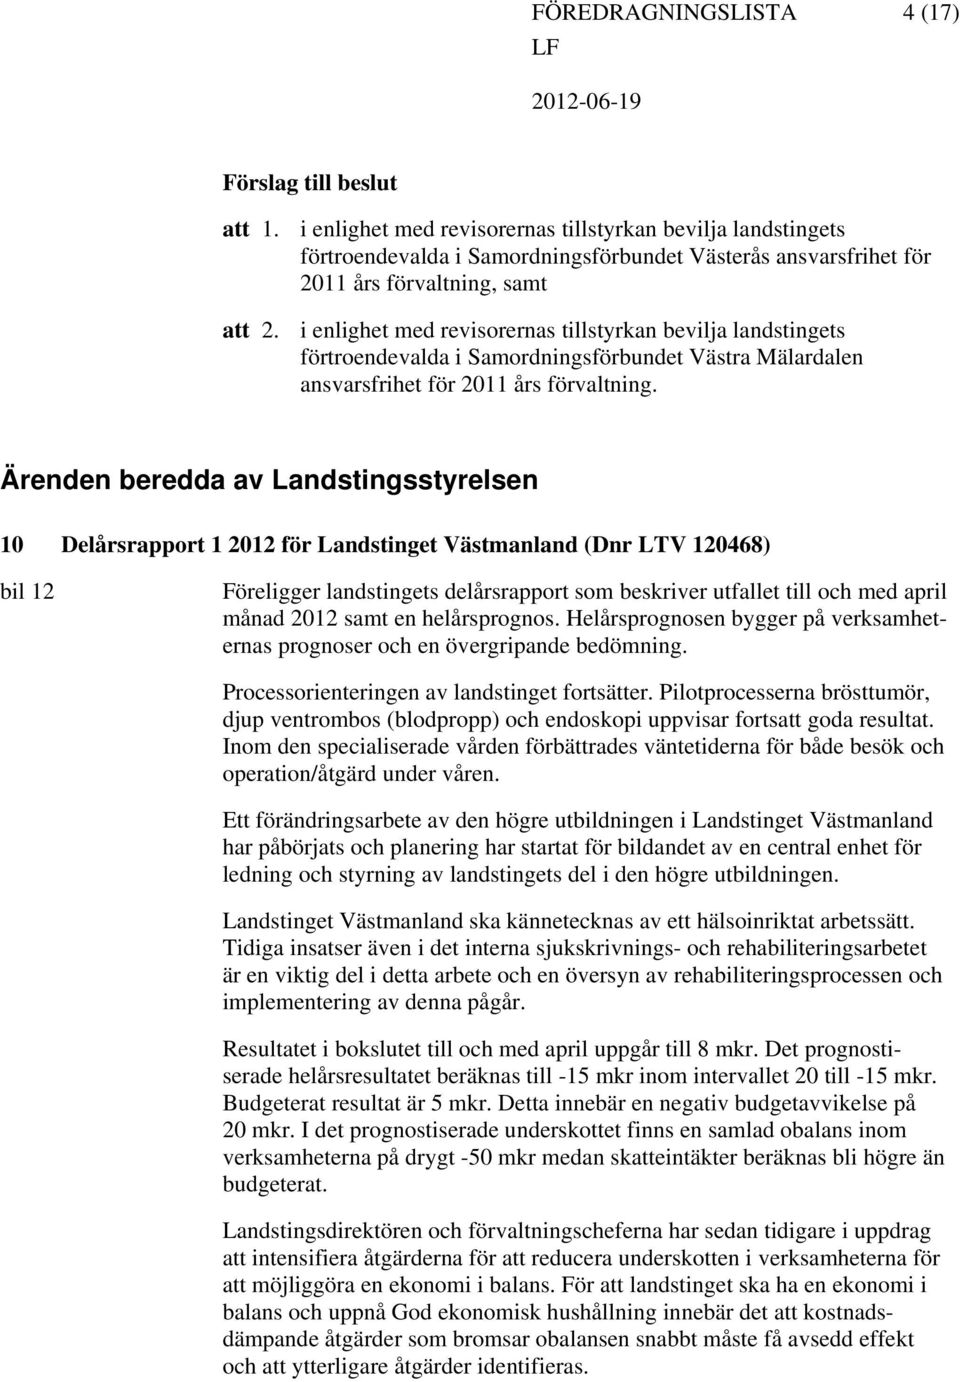 bevilja landstingets förtroendevalda i Samordningsförbundet Västra Mälardalen ansvarsfrihet för 2011 års förvaltning.